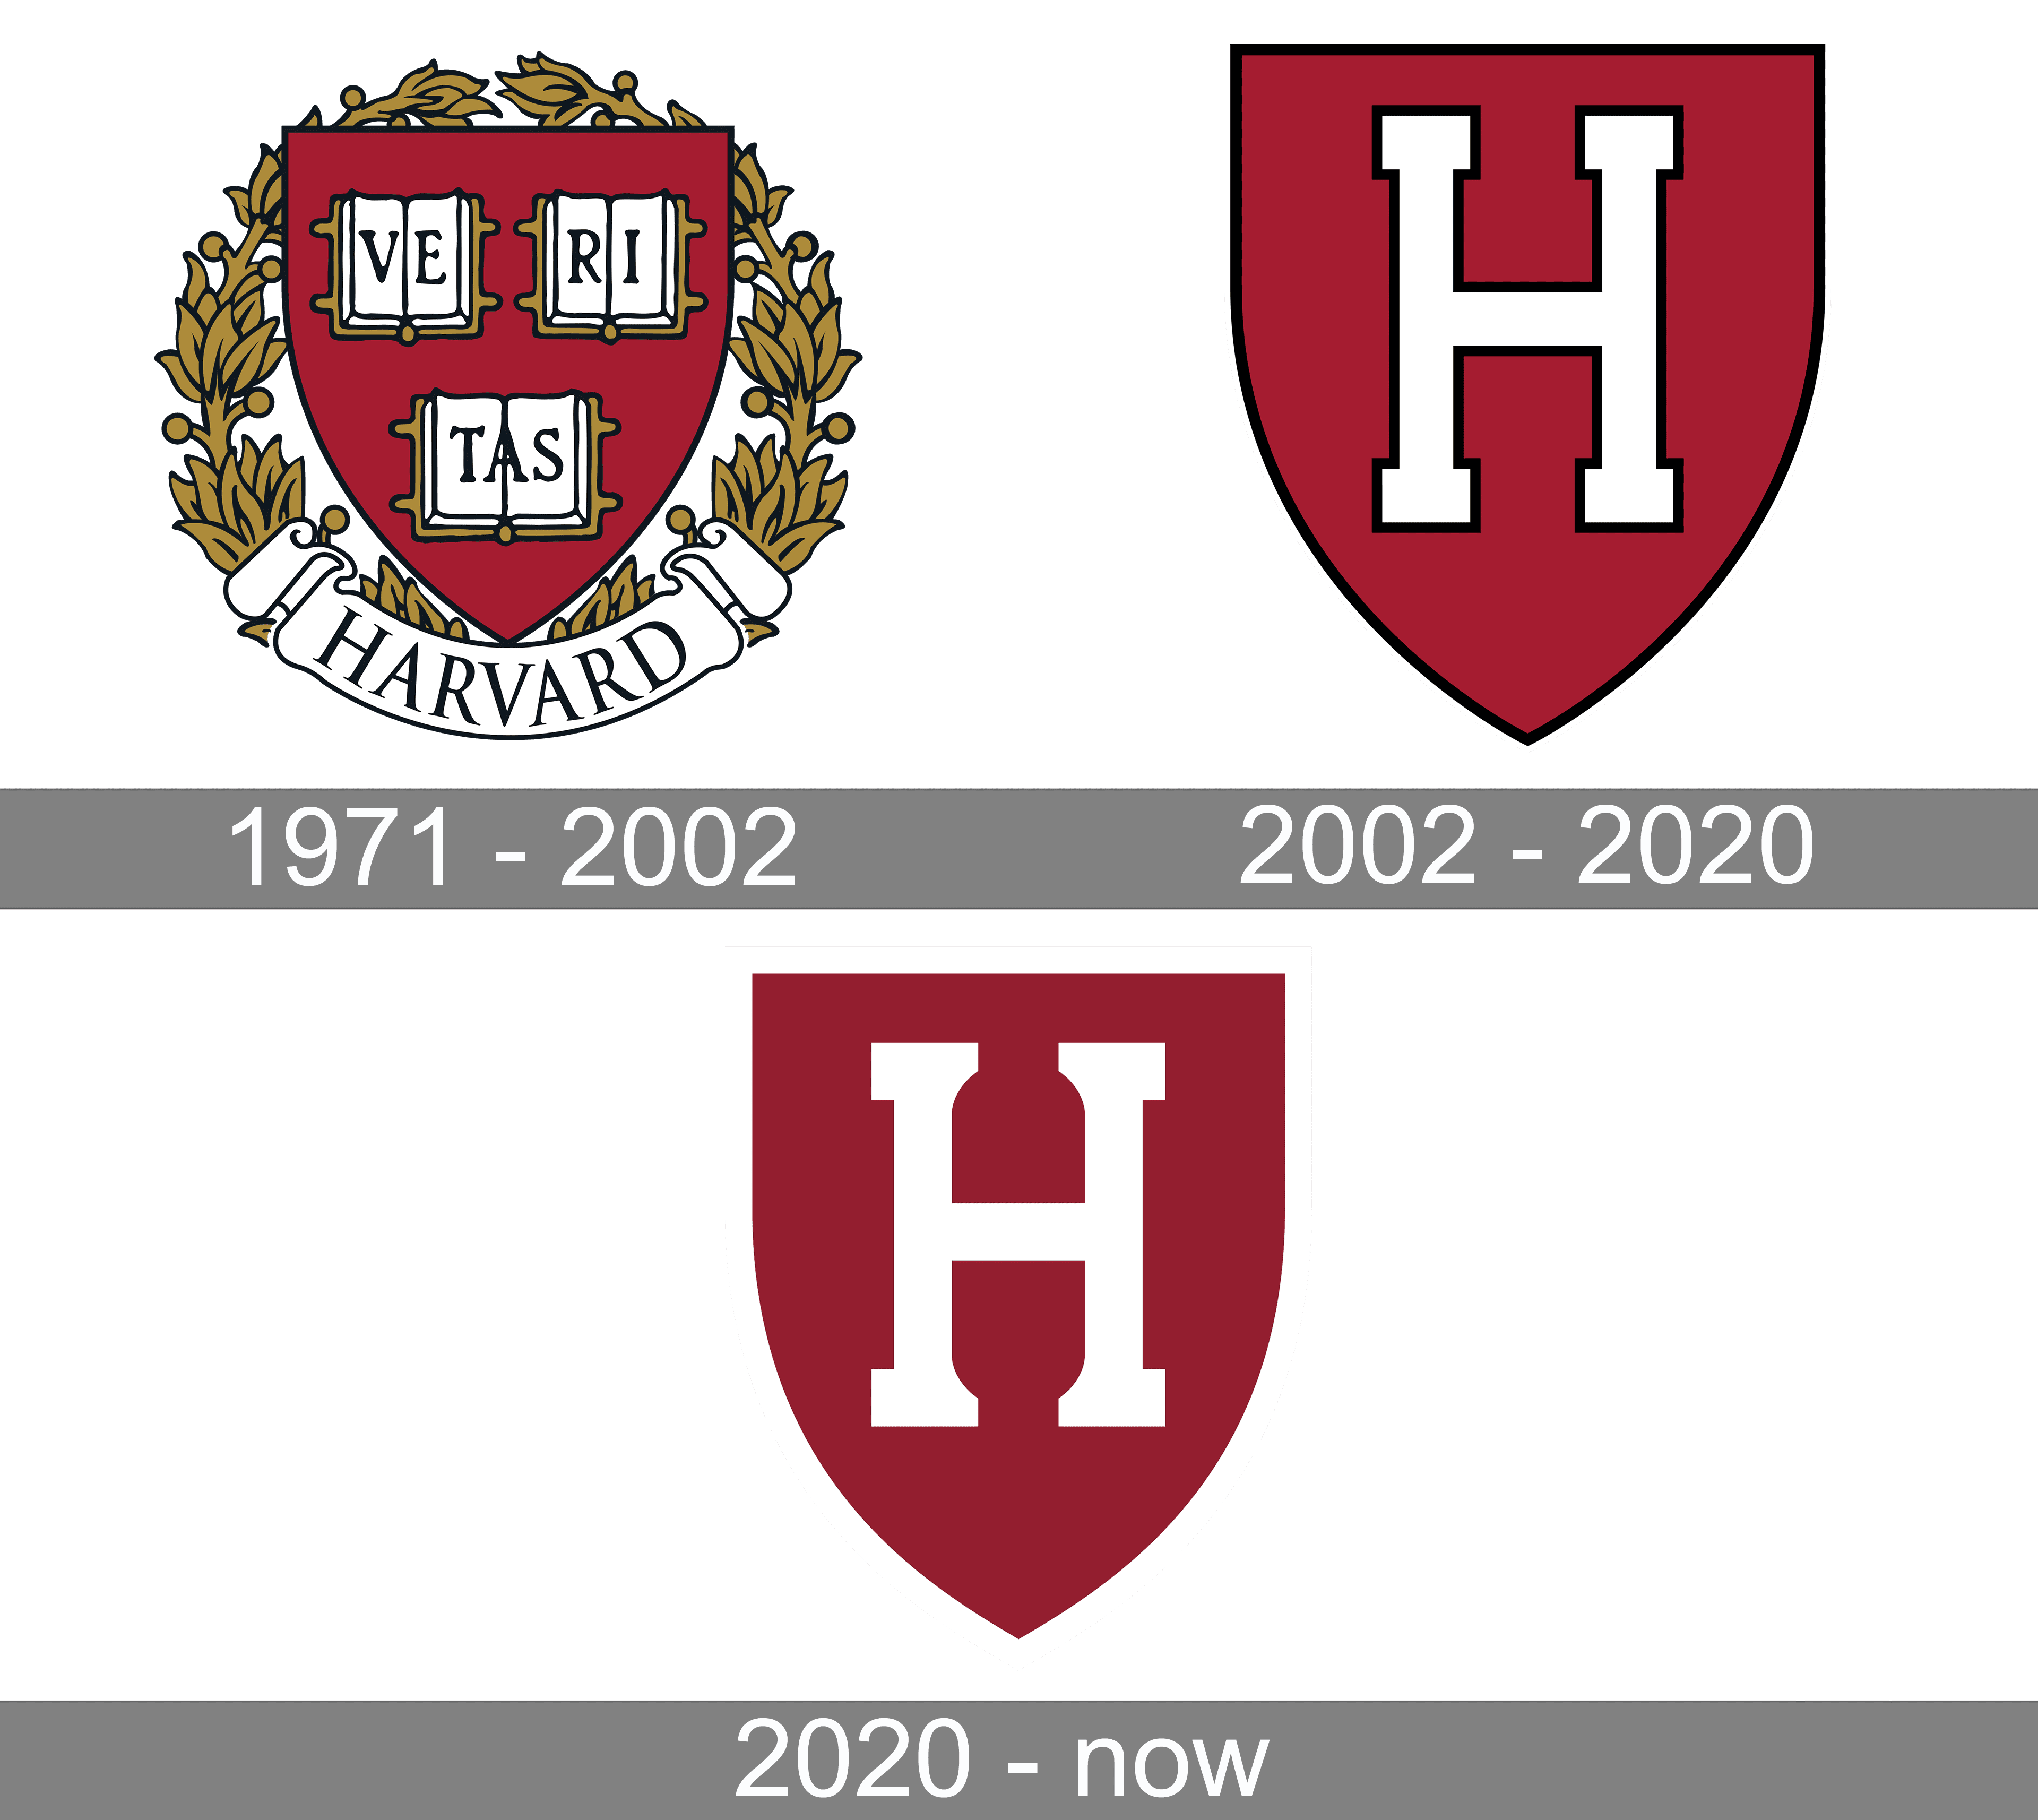 harvard logo png